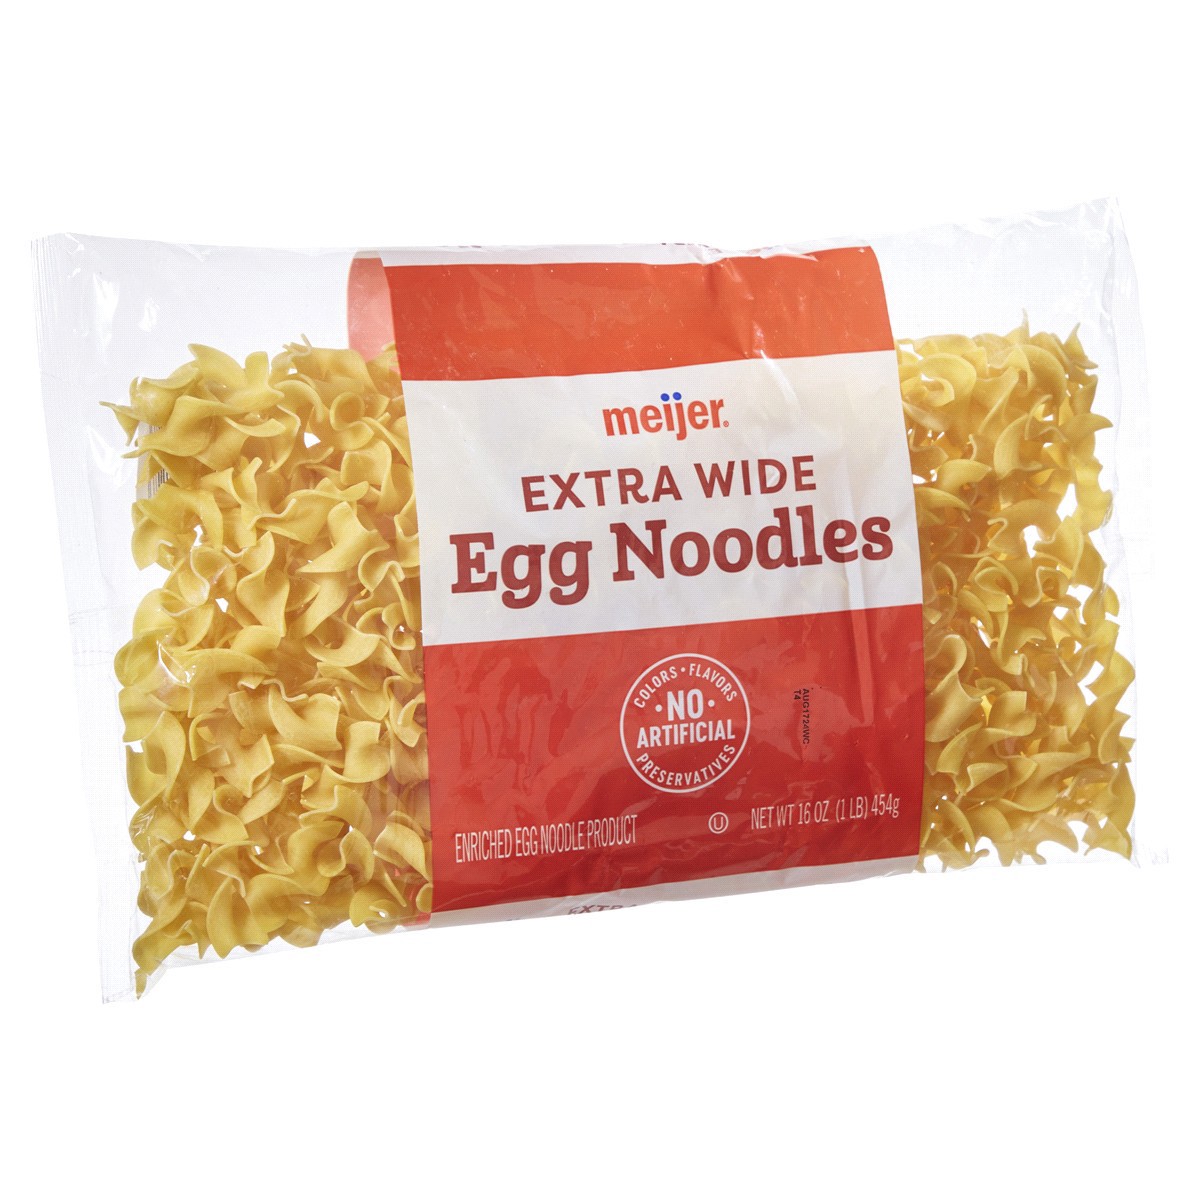 slide 5 of 29, Meijer Egg Noodles Extra Wide, 16 oz